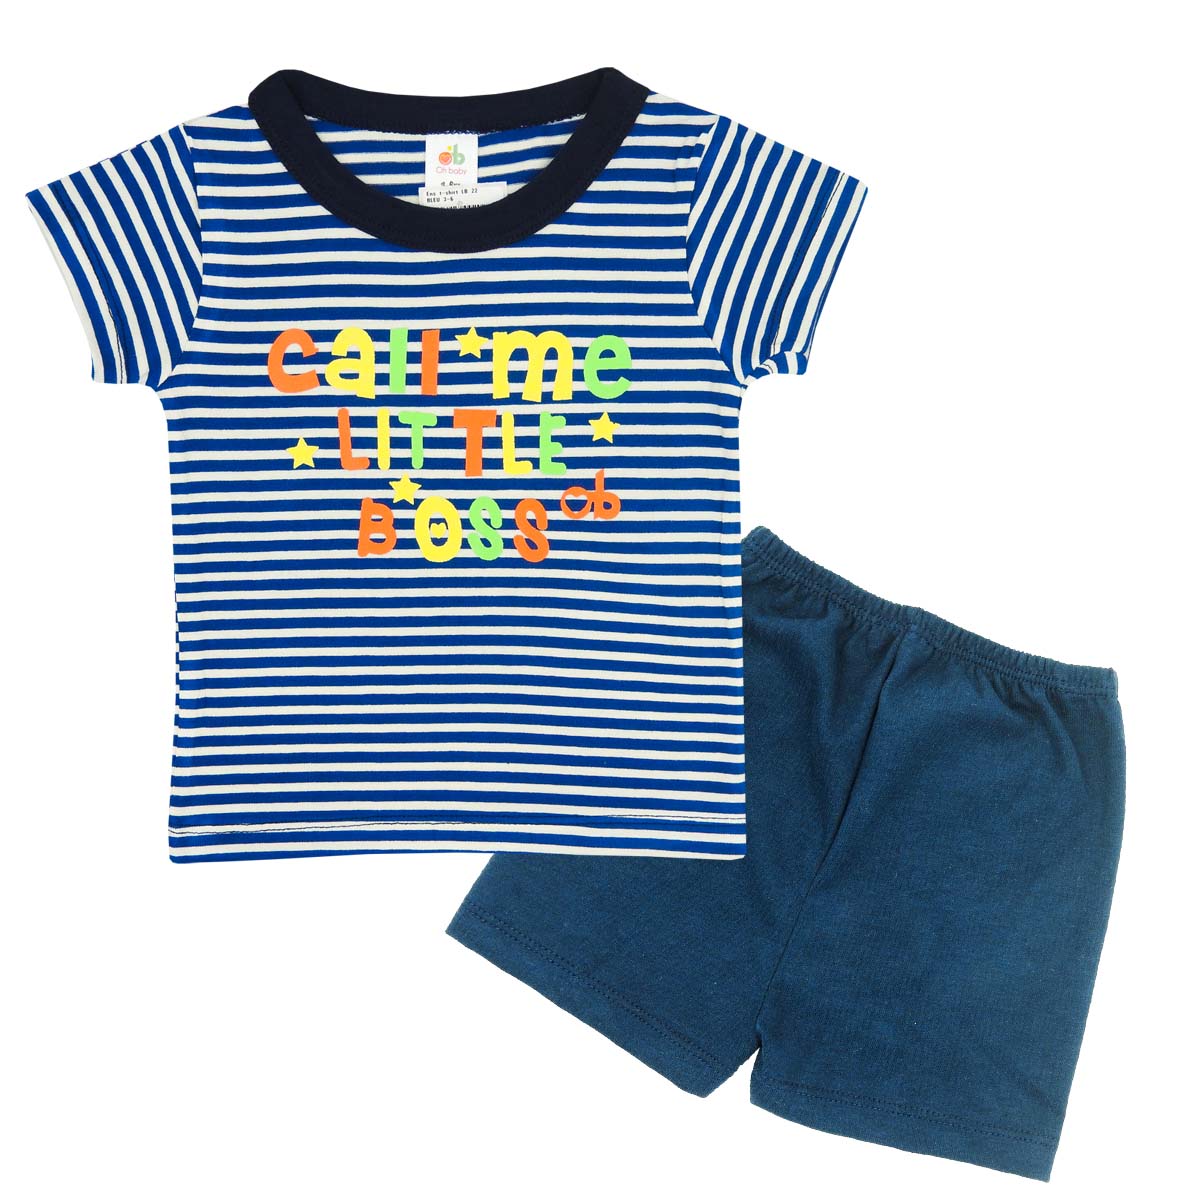 T-shirt set  “Little Boss” – Blue